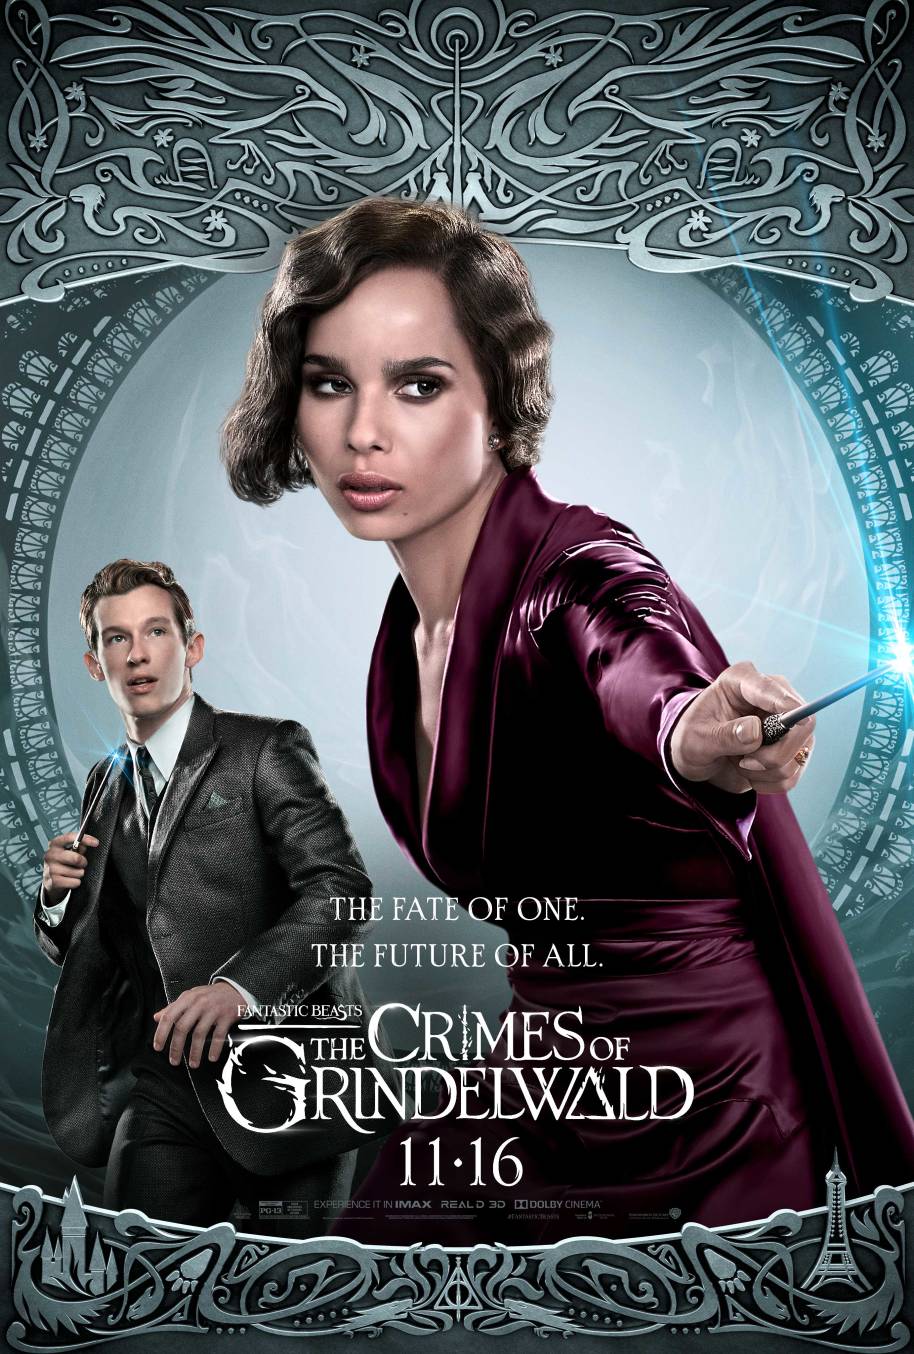 Fantastic Beasts: The Crimes of Grindelwald / Warner Bros. 